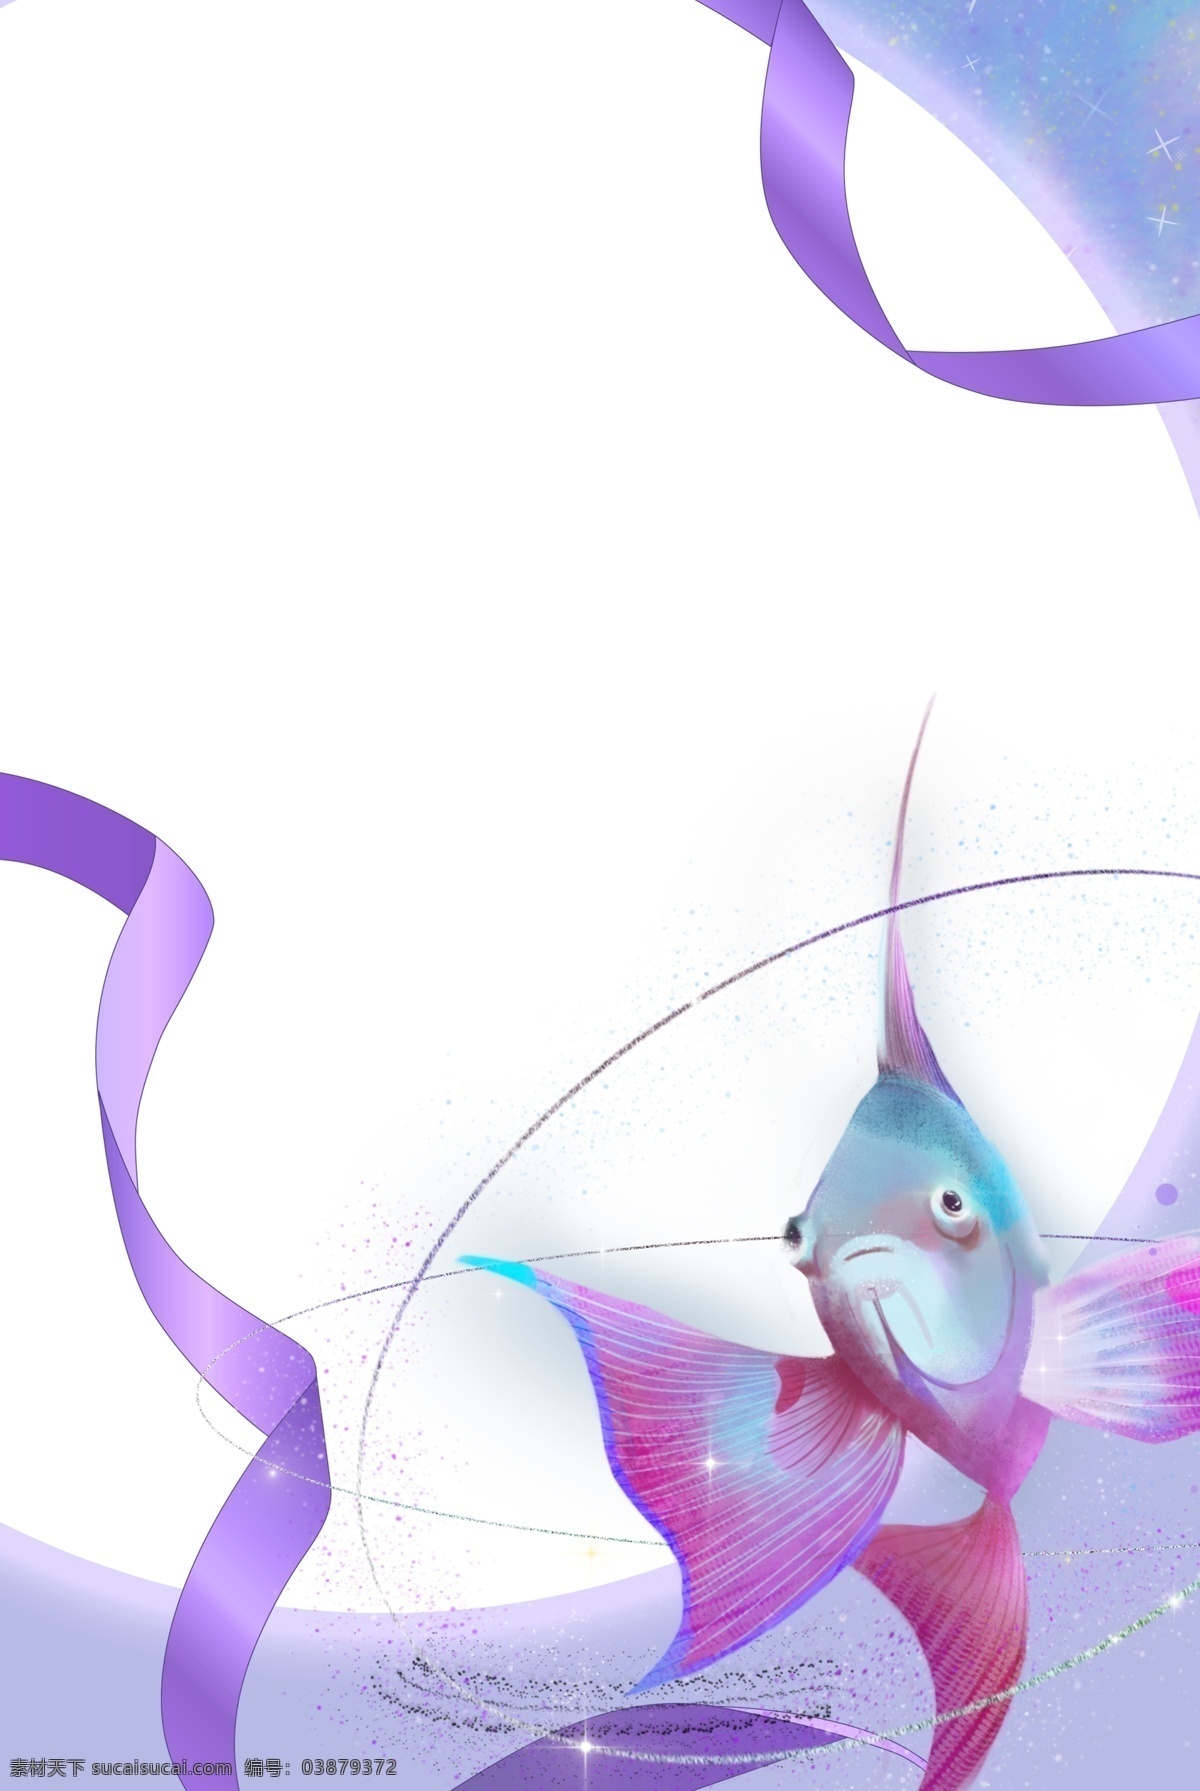 宠物 淘宝 电商 公告 紫色 迷幻 光芒 金鱼 锦鲤 光环 梦幻 飘带